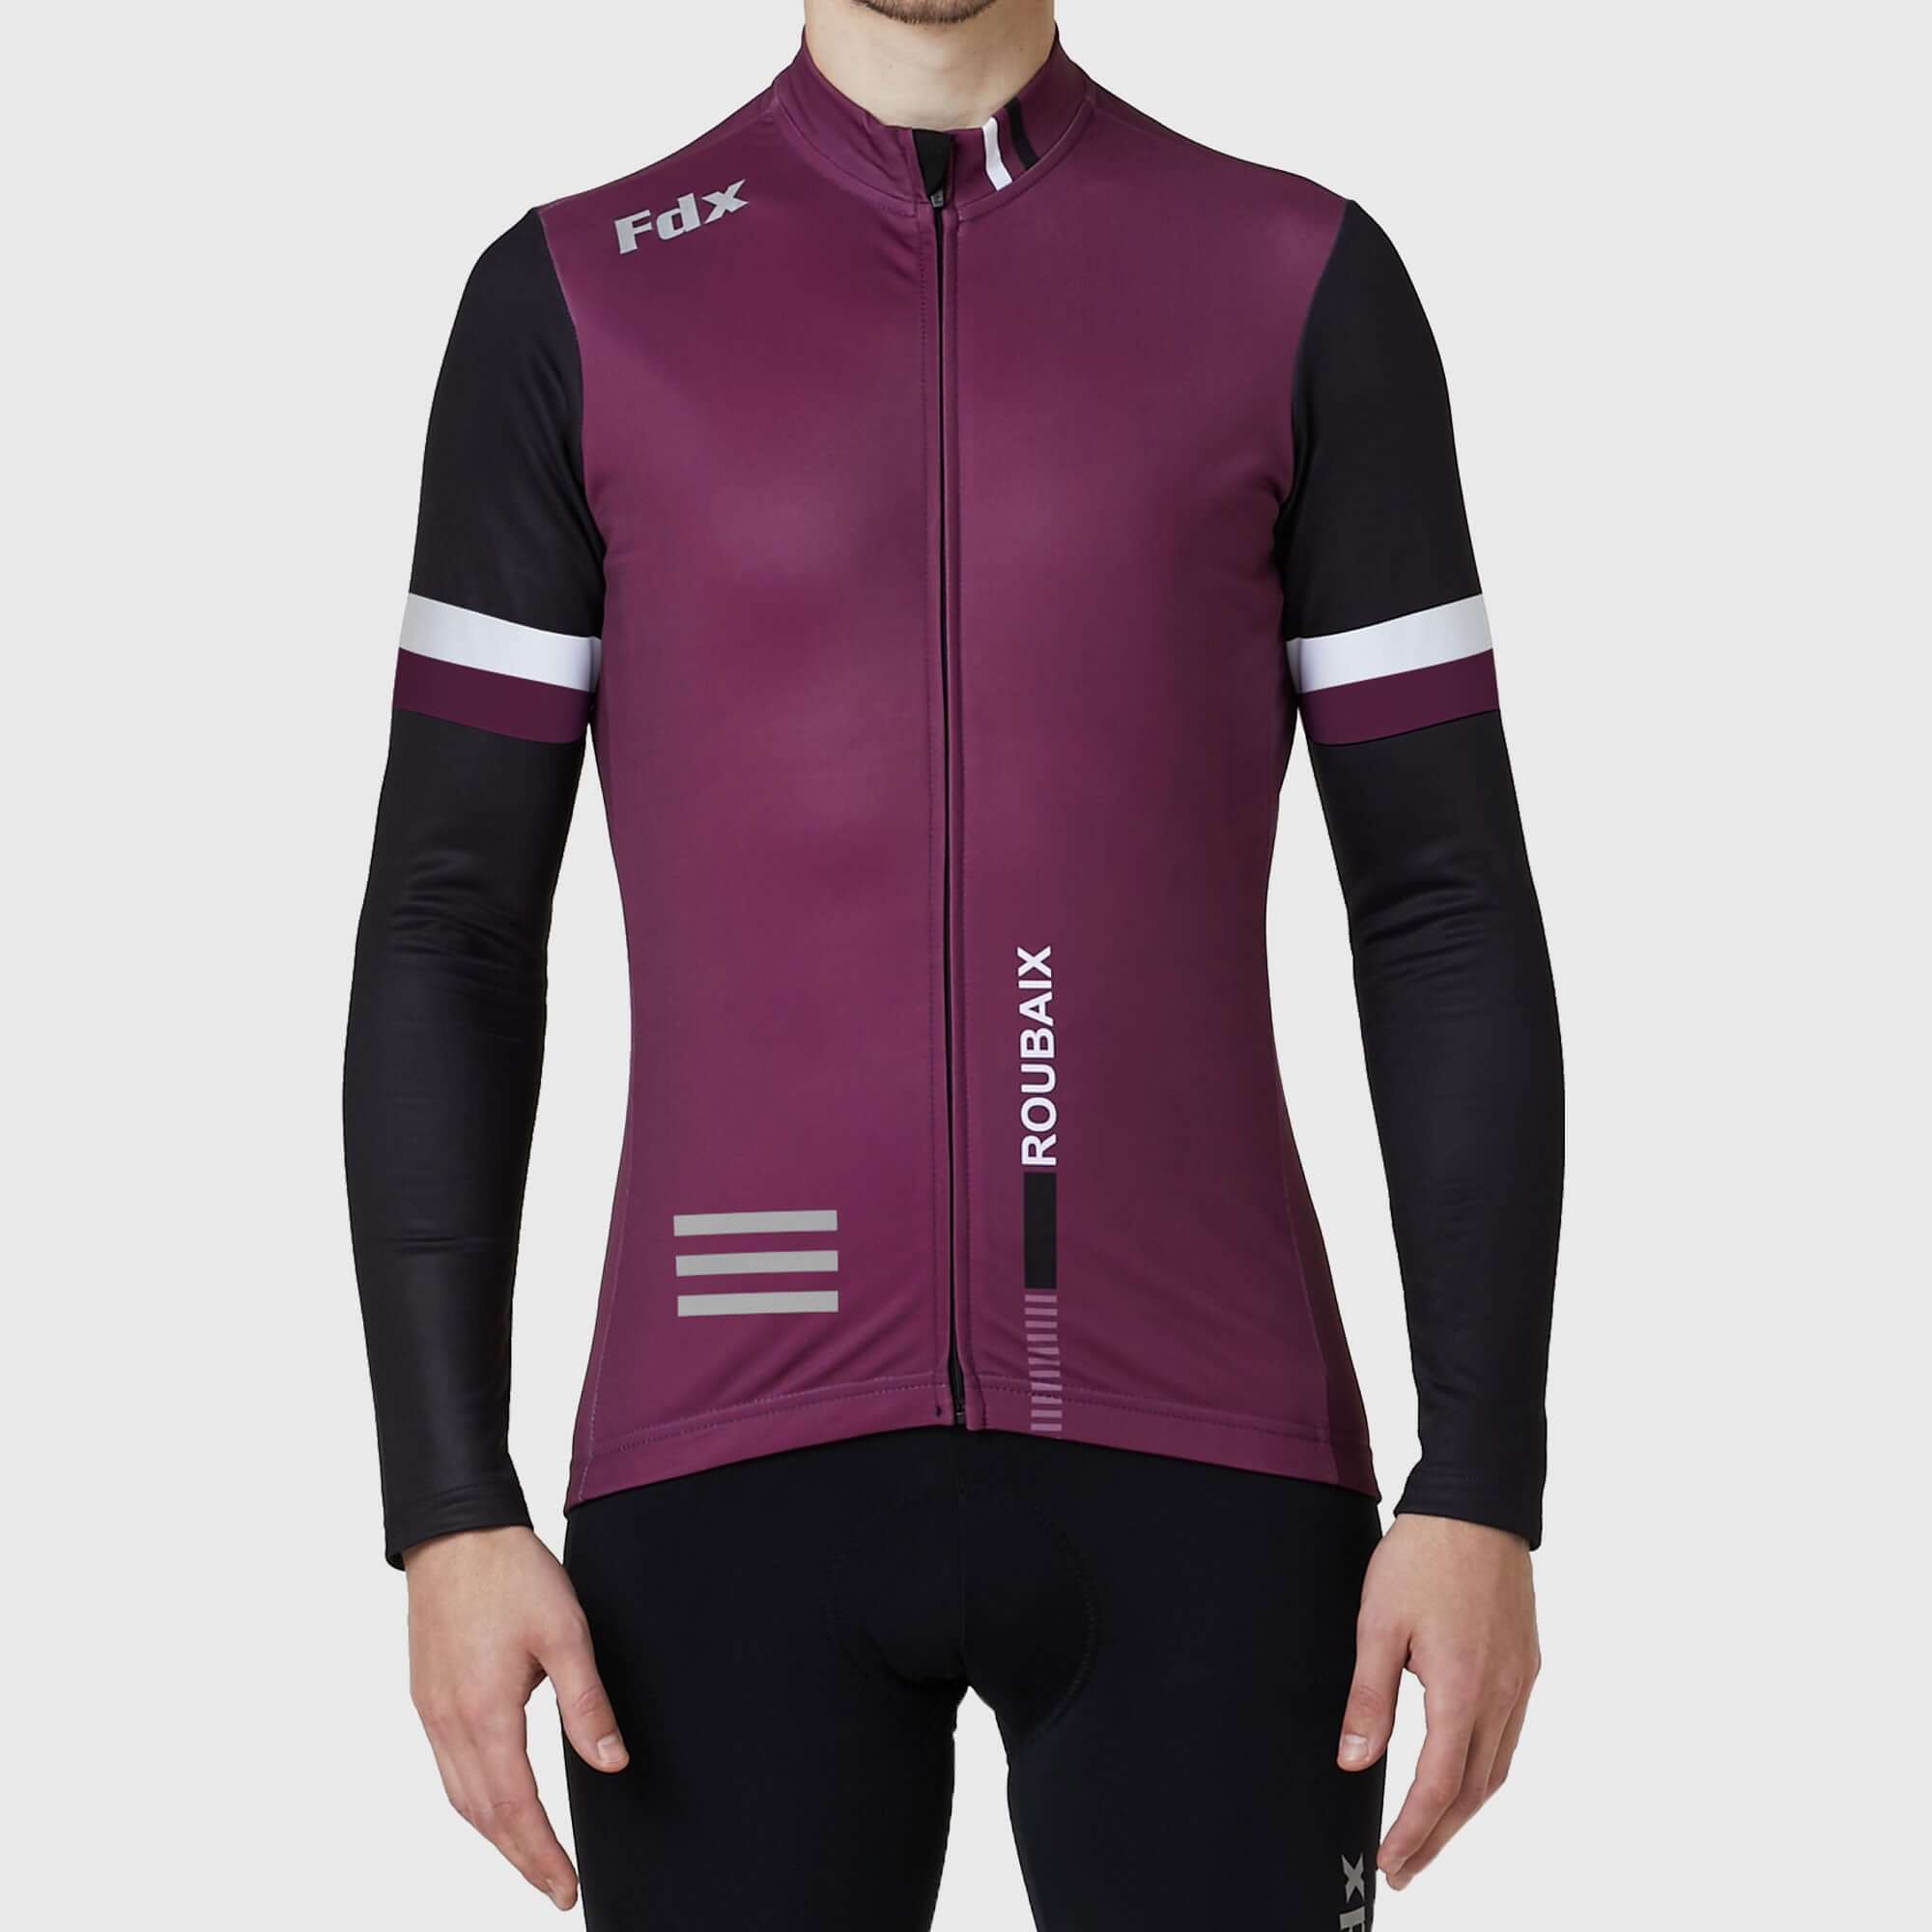 Fdx Men's Black & Purple Long Sleeve Cycling Jersey & Gel Padded Bib Tights Pants for Winter Roubaix Thermal Fleece Road Bike Wear Windproof, Hi-viz Reflectors & Pockets - Limited Edition